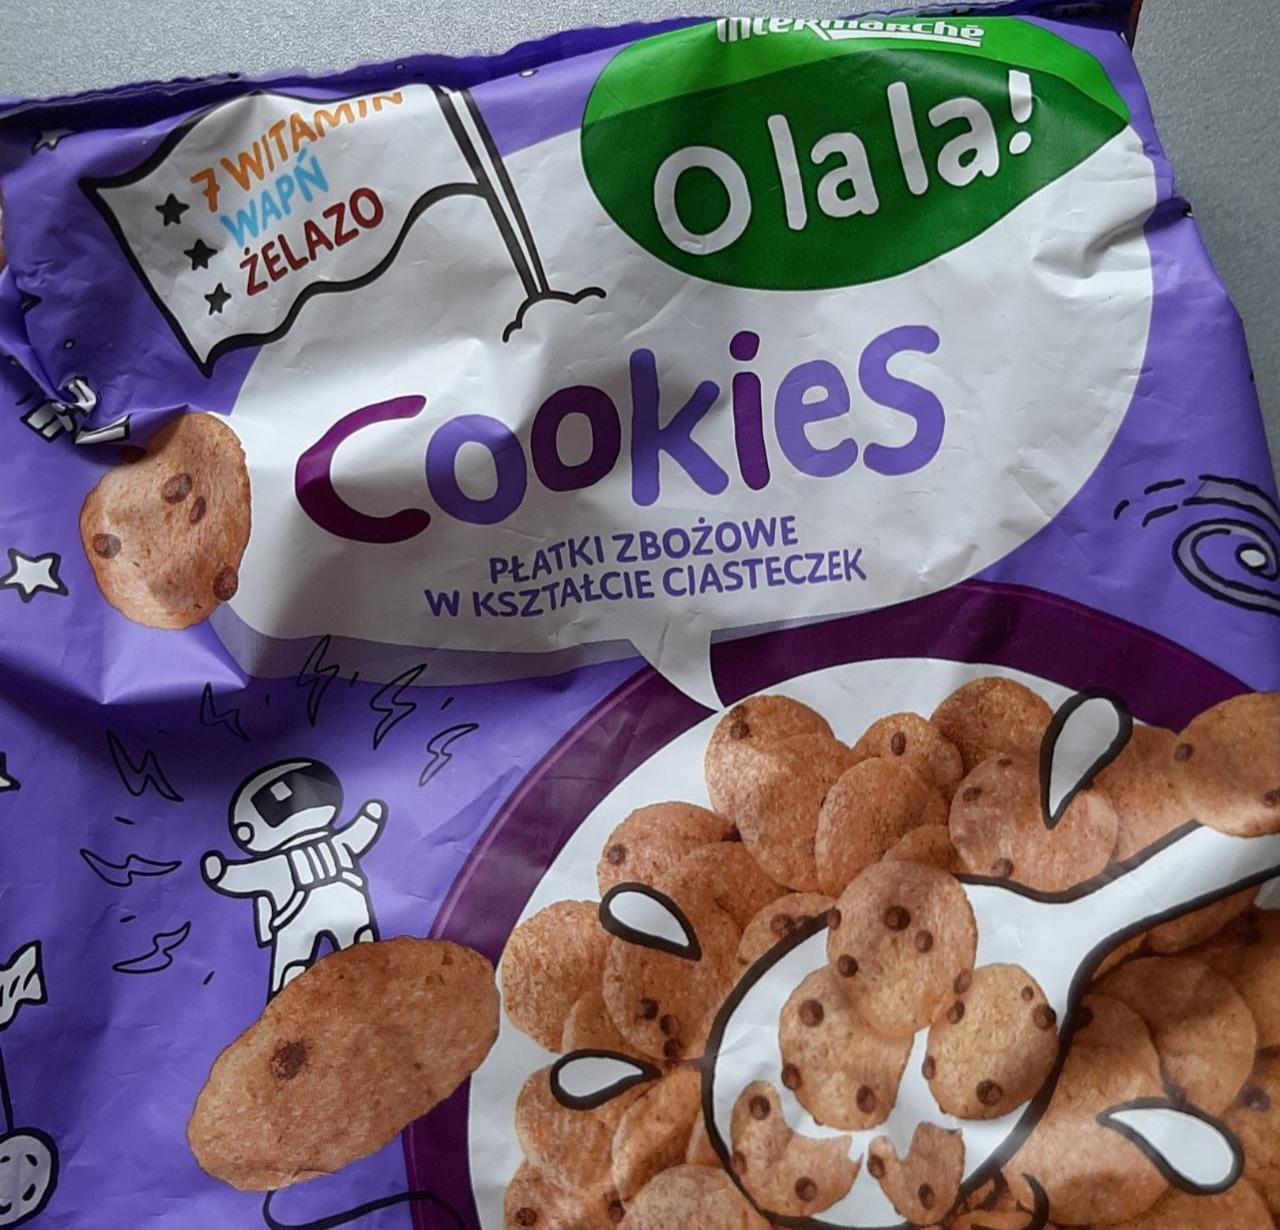 Zdjęcia - Cookies Płatki zbożowe w kształcie ciasteczek Intermarche